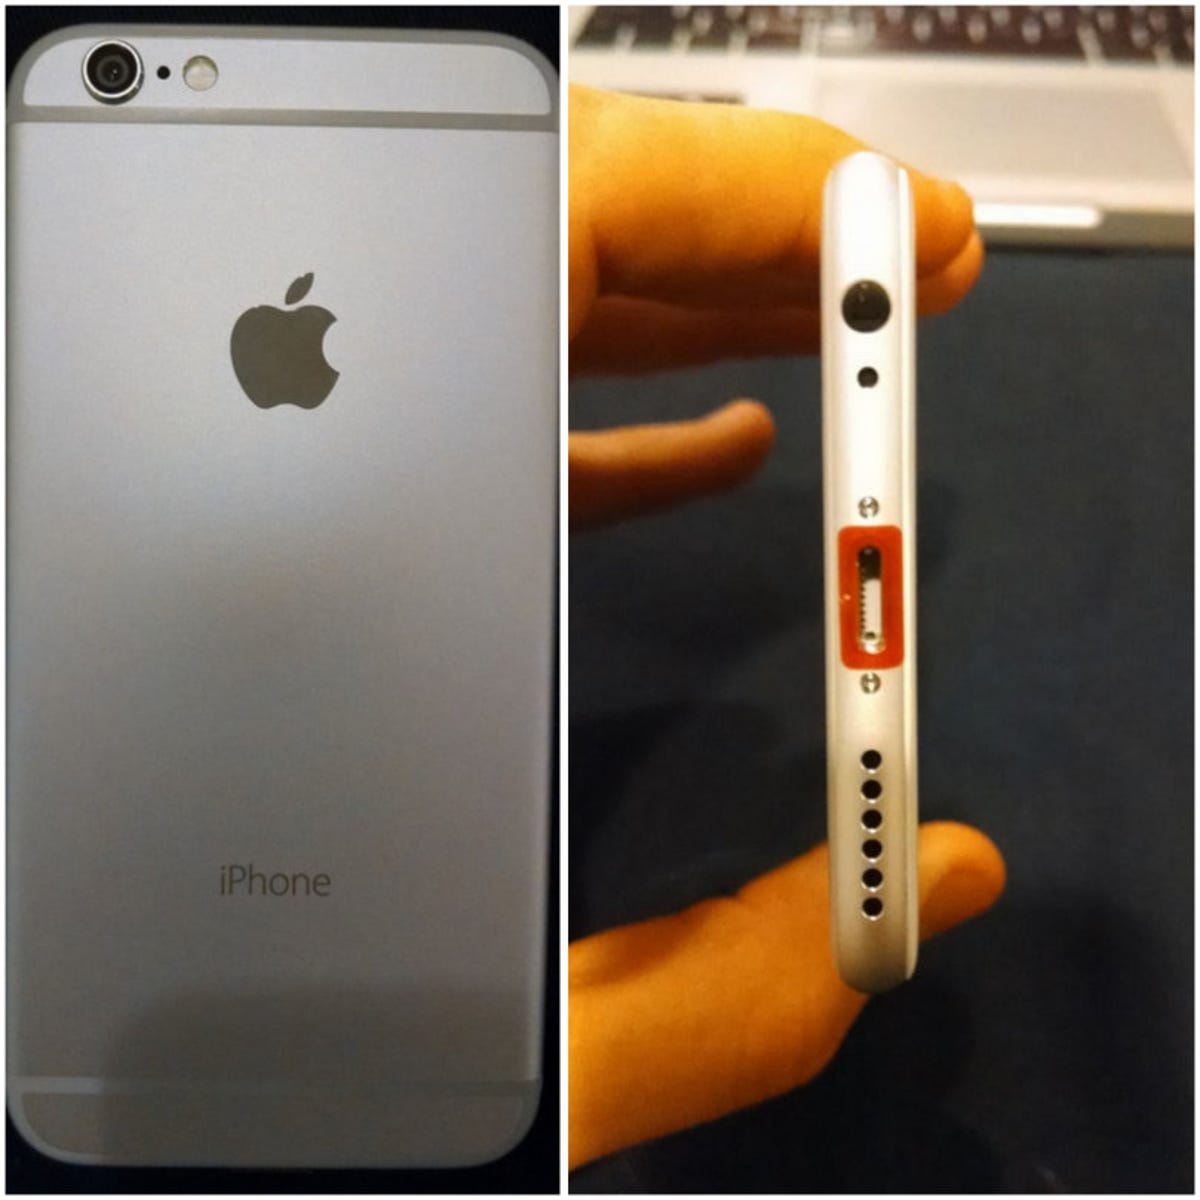 Alleged prototype iPhone 6